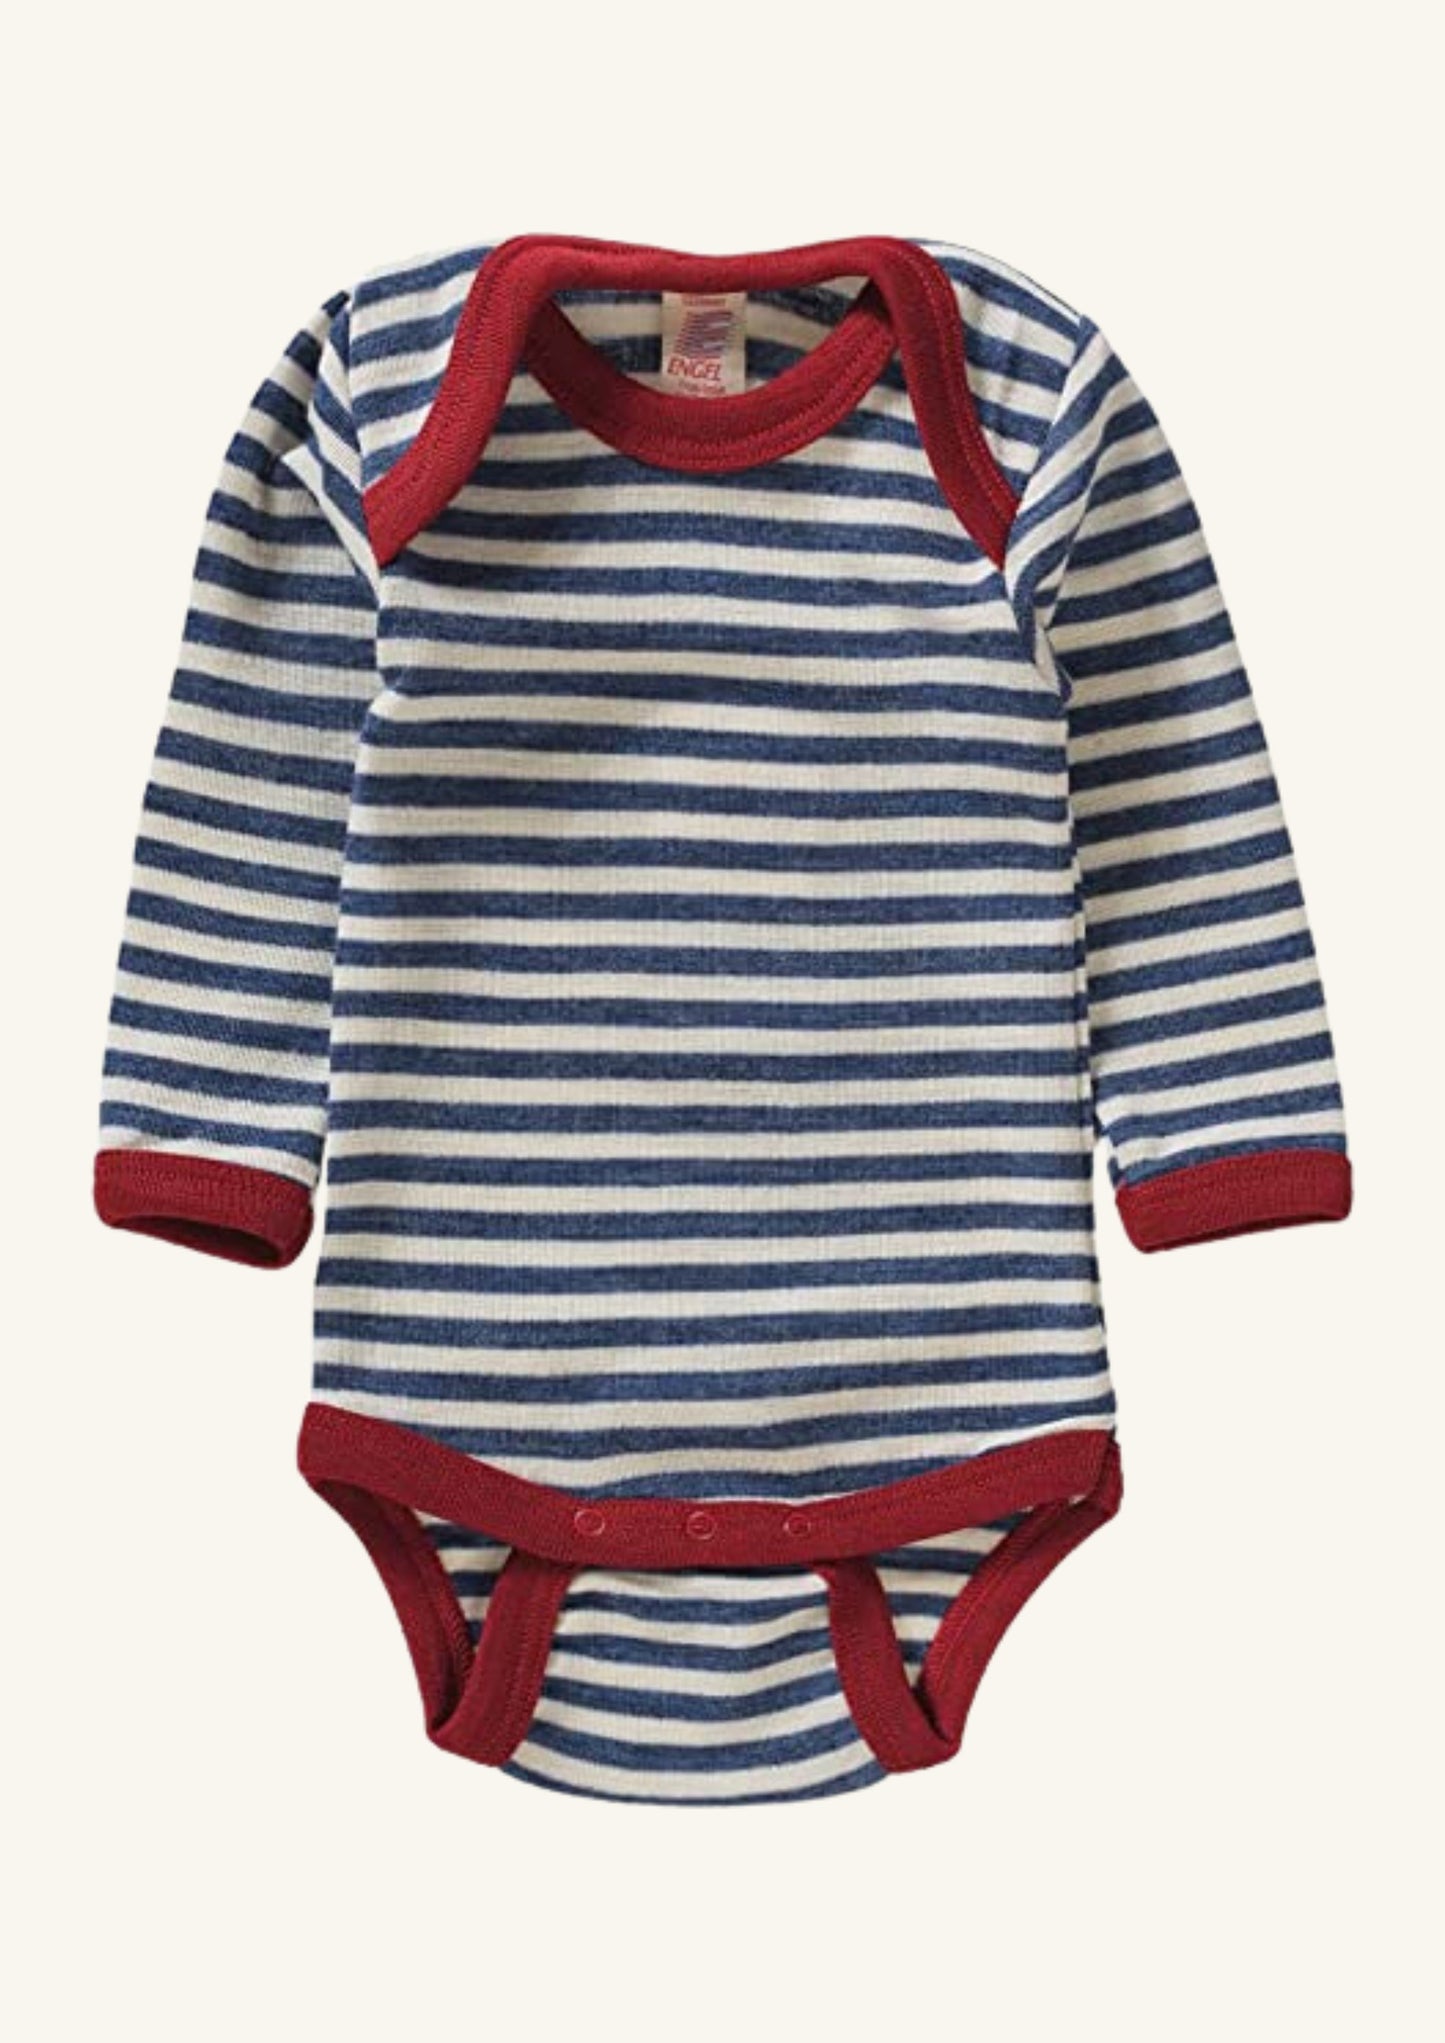 Engel Bodysuit - Blue Stripe with Red Trim